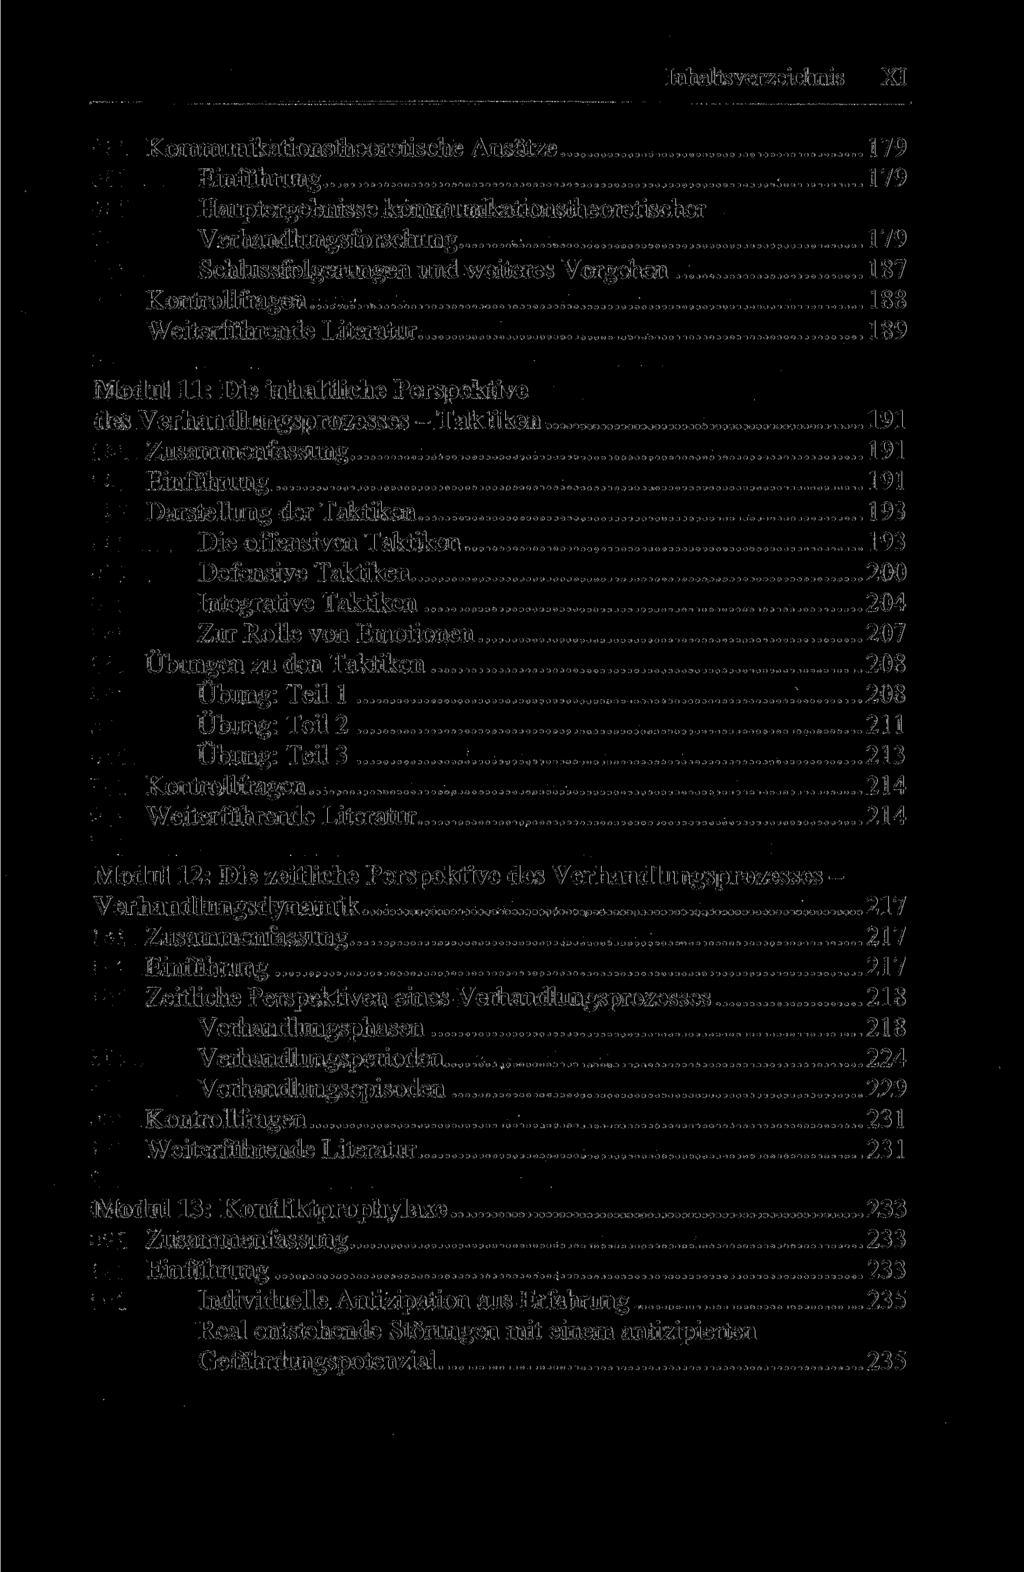 Inhaltsverzeichnis XI Kommunikationstheoretische Ansätze 179 Einführung 179 Hauptergebnisse kommunikationstheoretischer Verhandlungsforschung 179 Schlussfolgerungen und weiteres Vorgehen 187